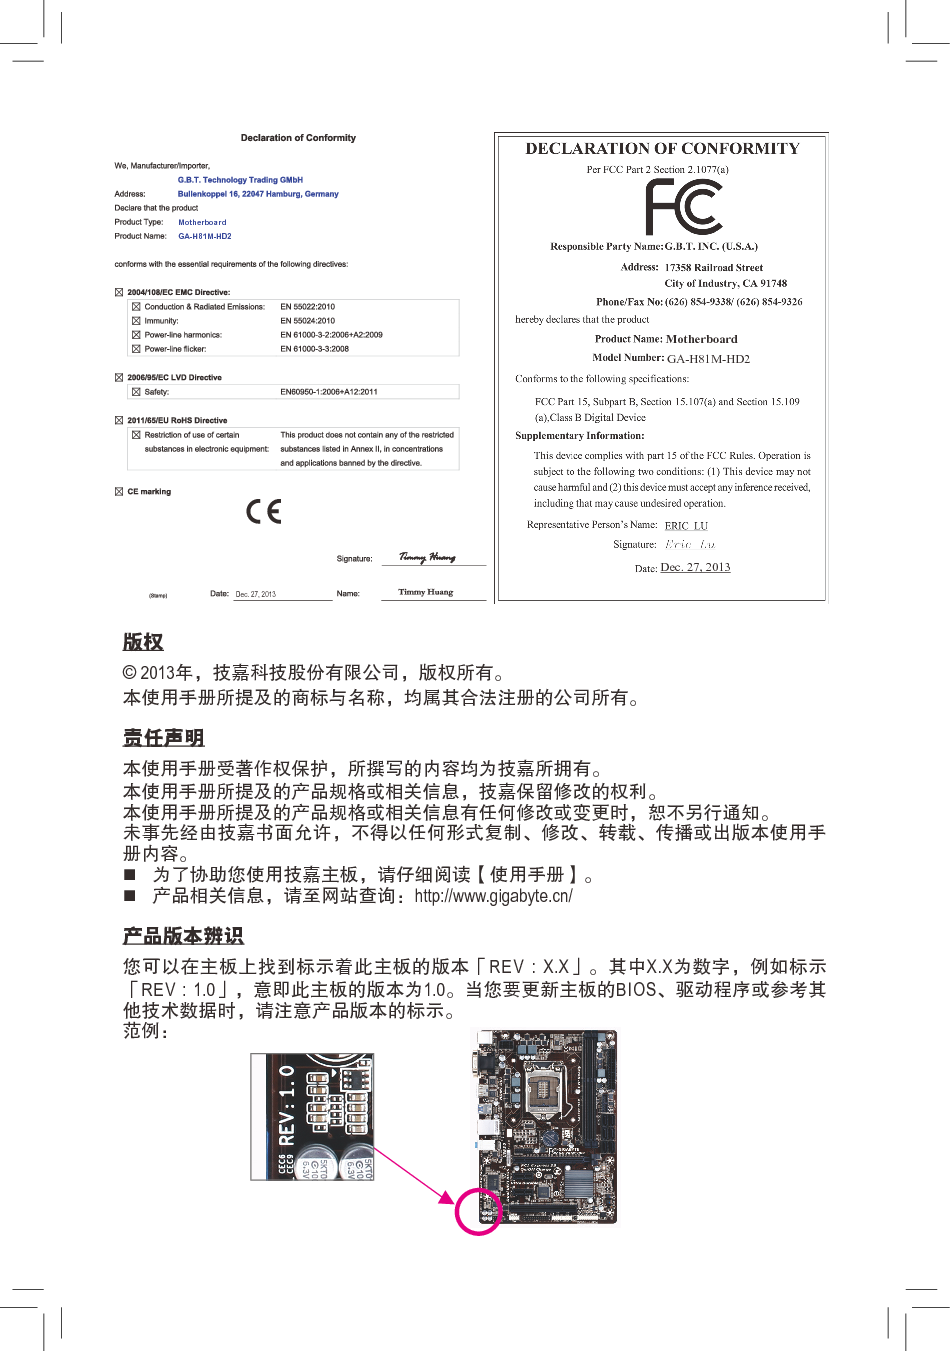 技嘉 Gigabyte GA-H81M-HD2 使用手册 第1页